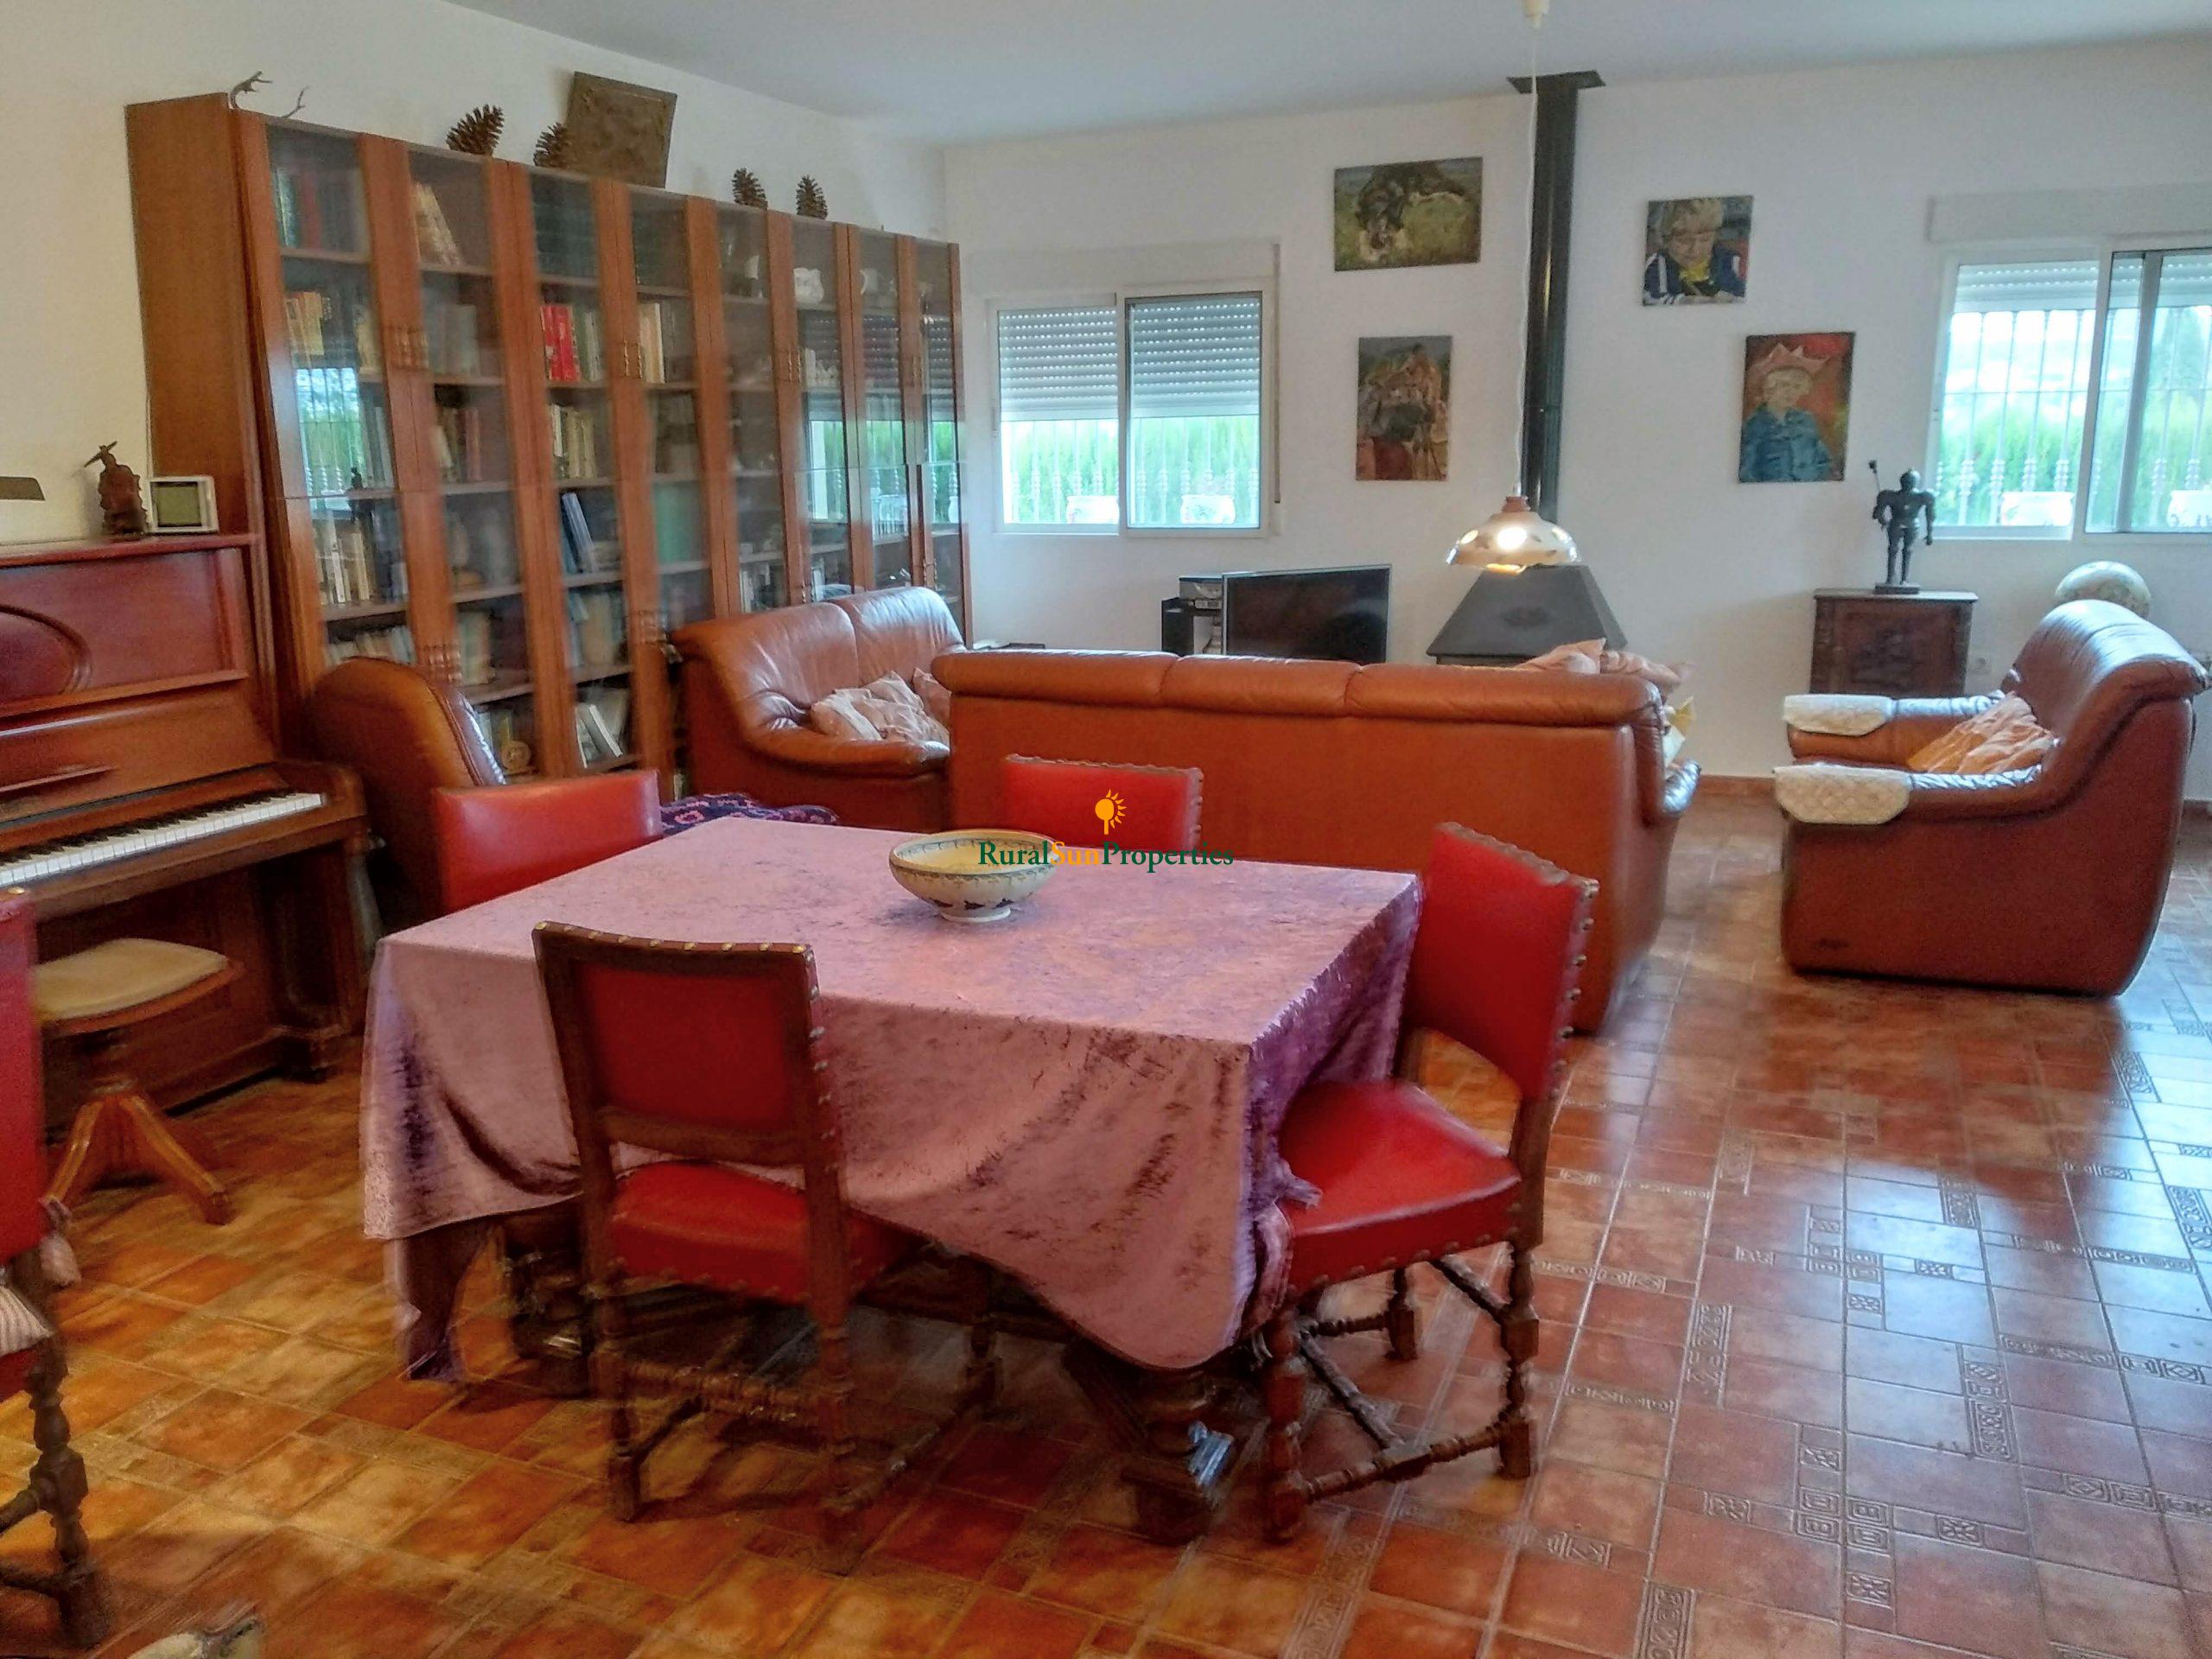 Venta casa de campo en Cehegín en parcela vallada de 5.000m2